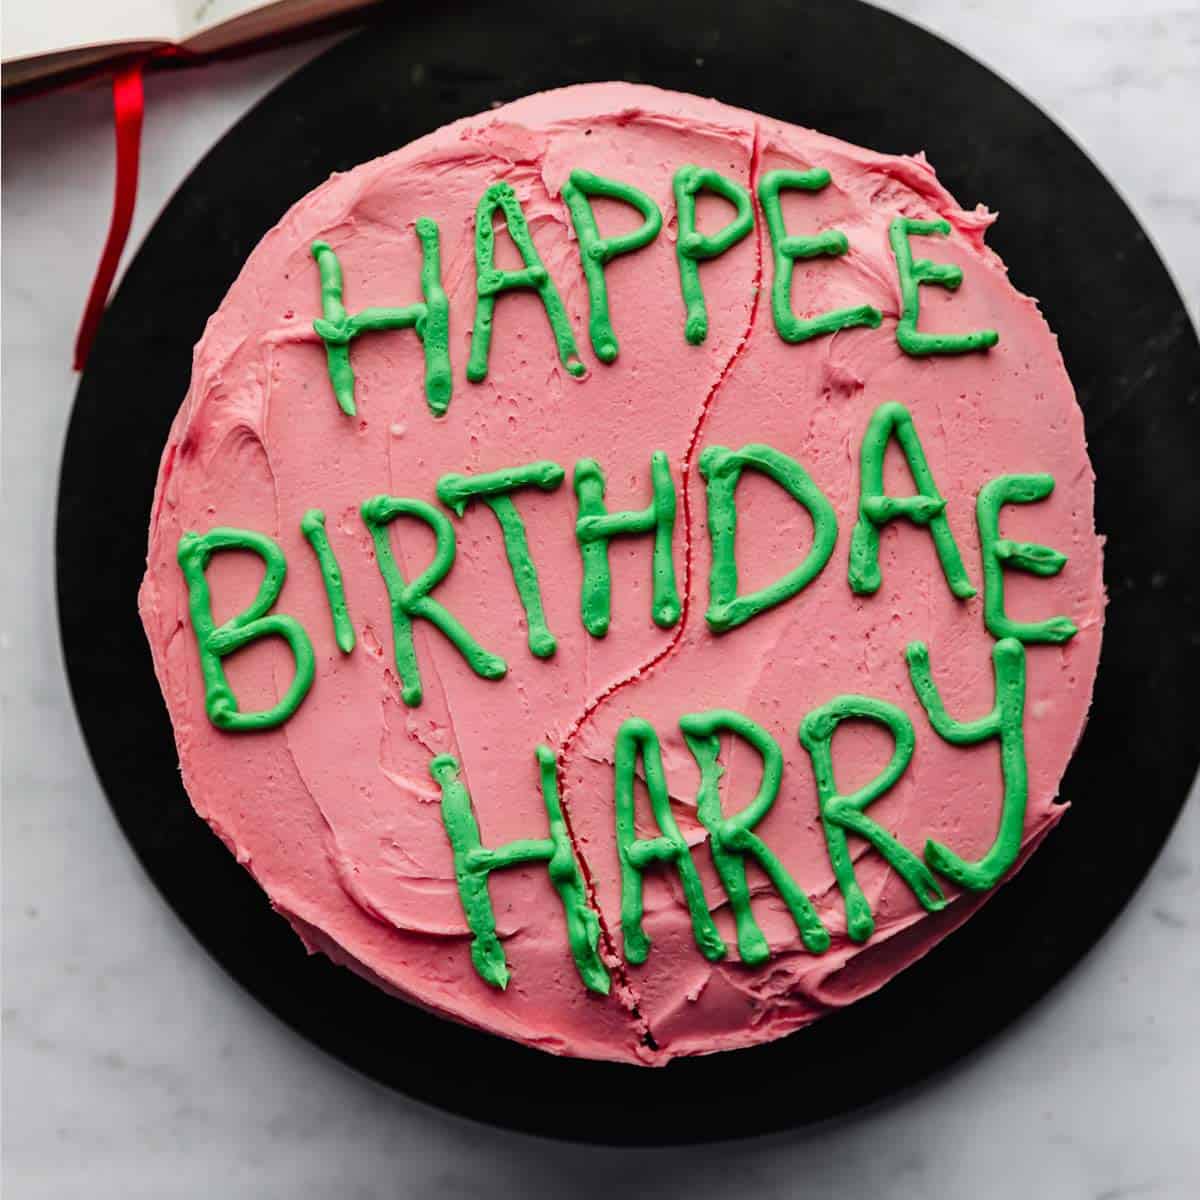 Happy birthday harry cake